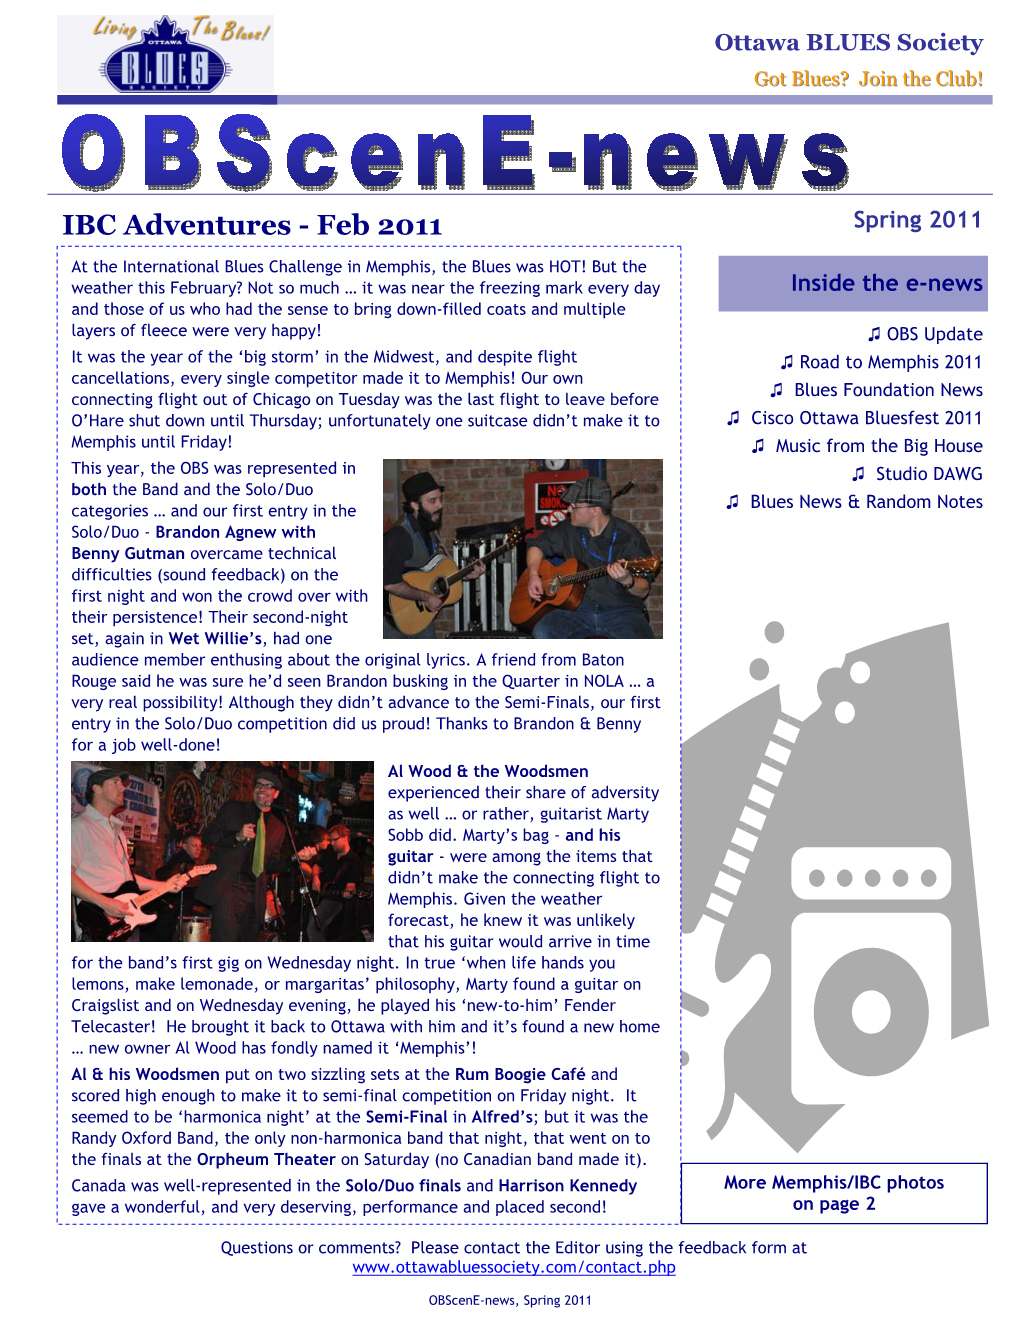 Obscene-News, Spring 2011